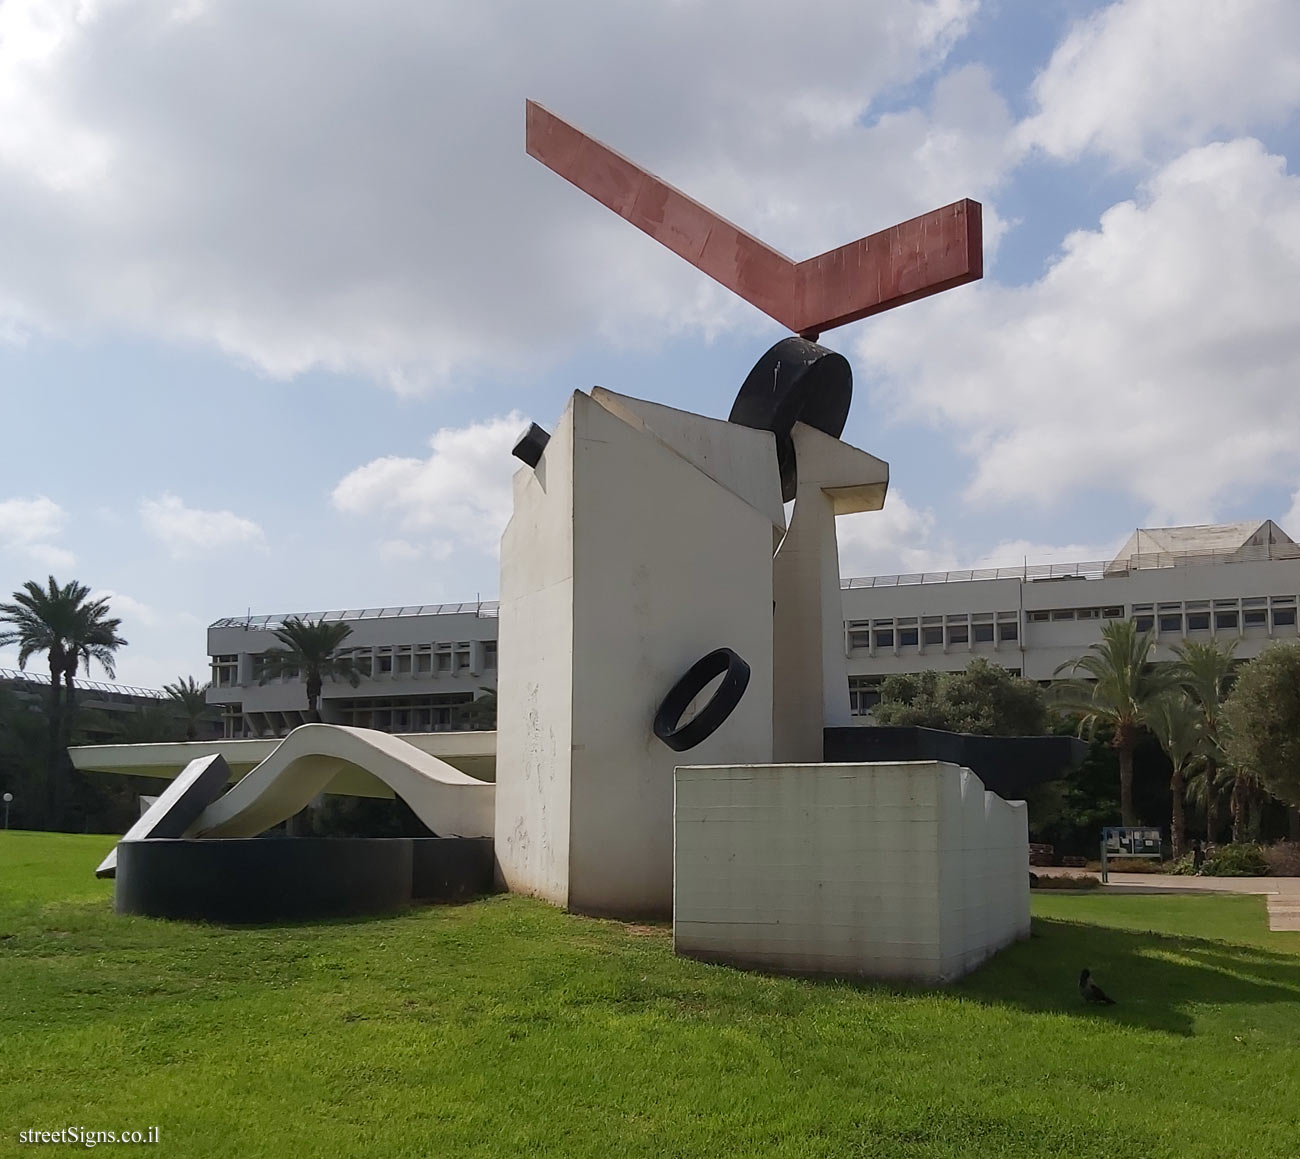 Tel Aviv - "Happening" - outdoor sculpture by Yigael Tumarkin - Tel Aviv University-Ramat Aviv Campus, Tel Aviv, Israel